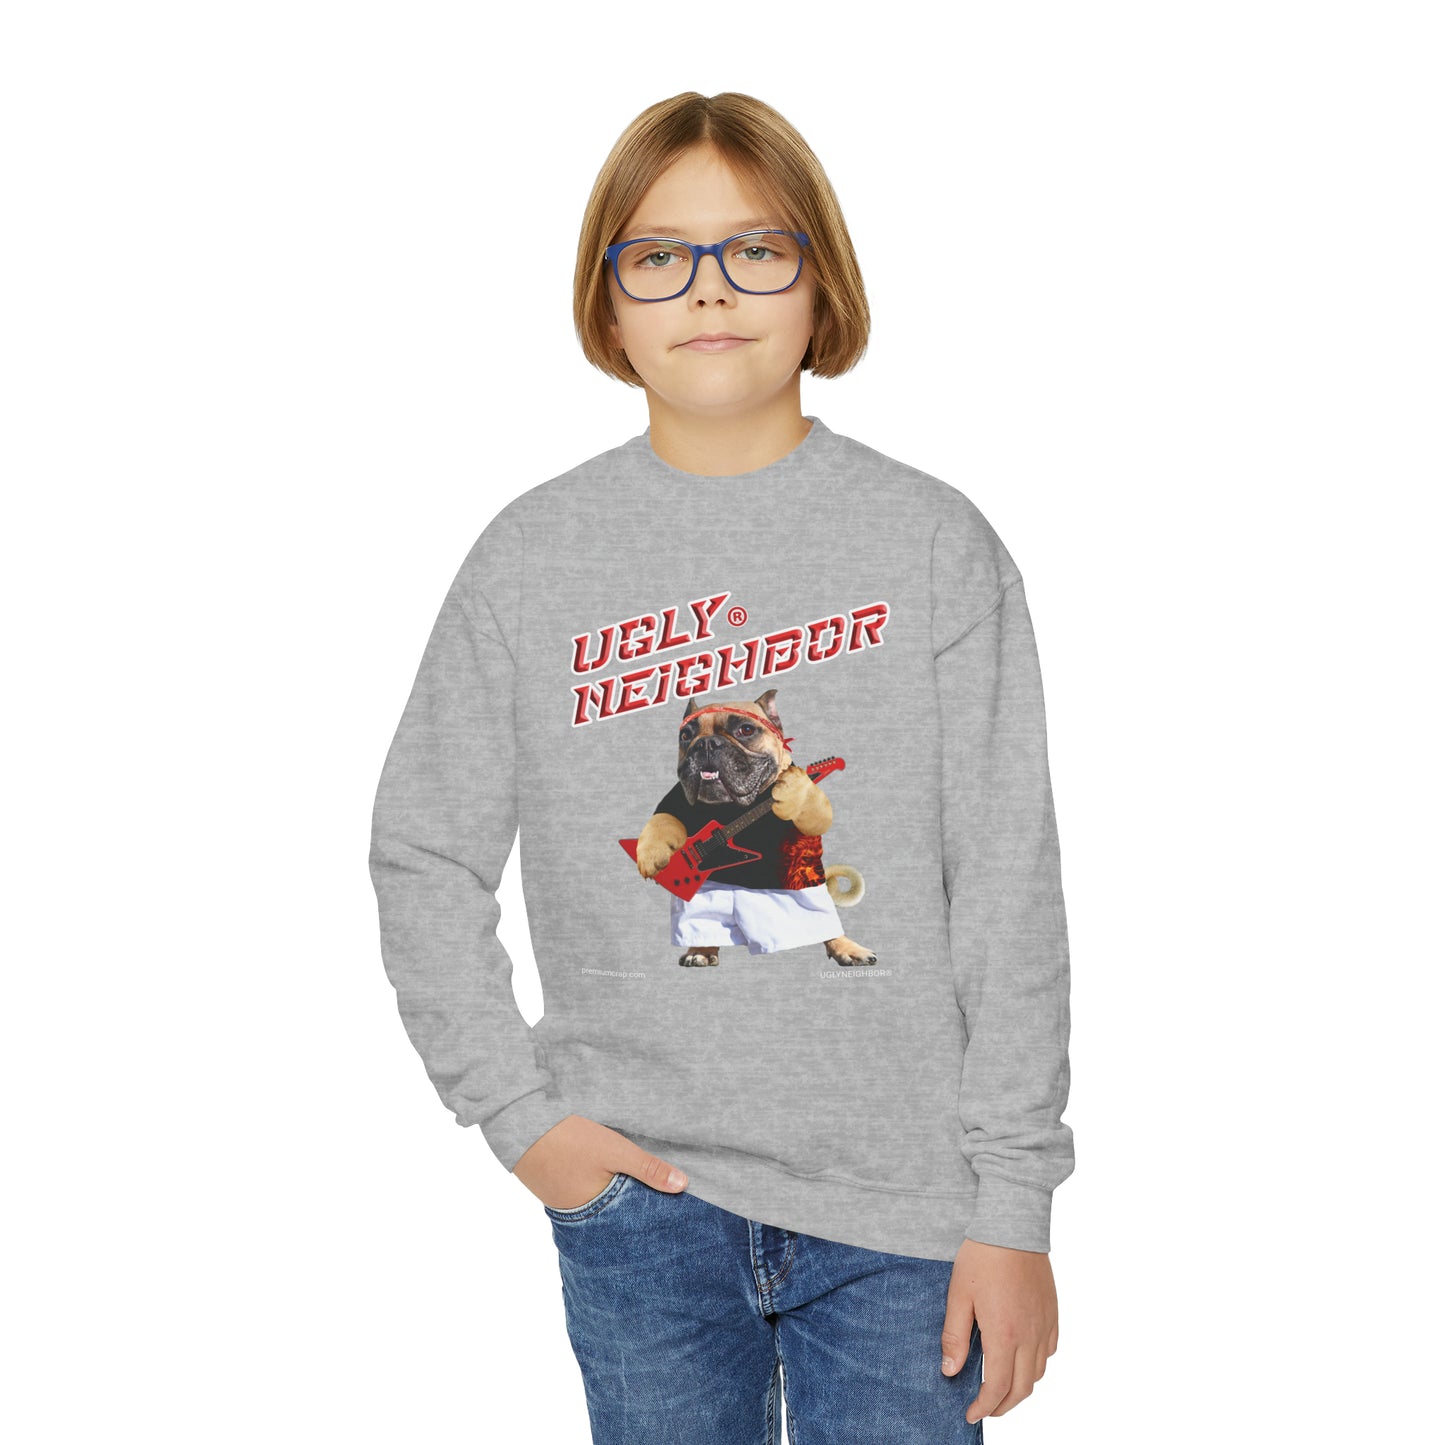 Ugly Neighbor Teenybopper Sweatshirt